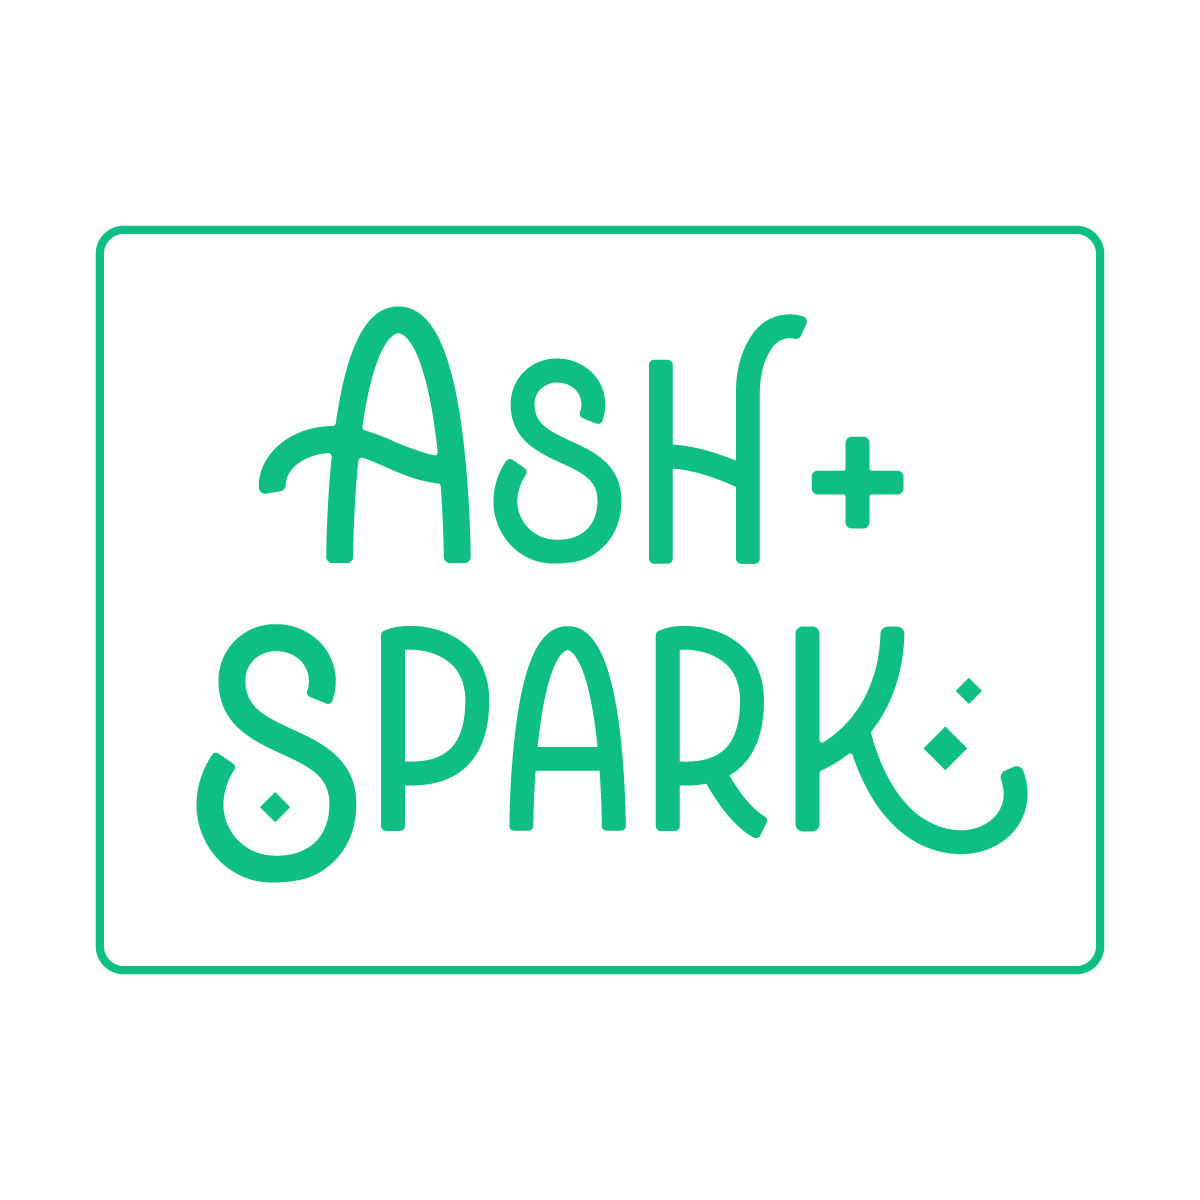 ash + spark